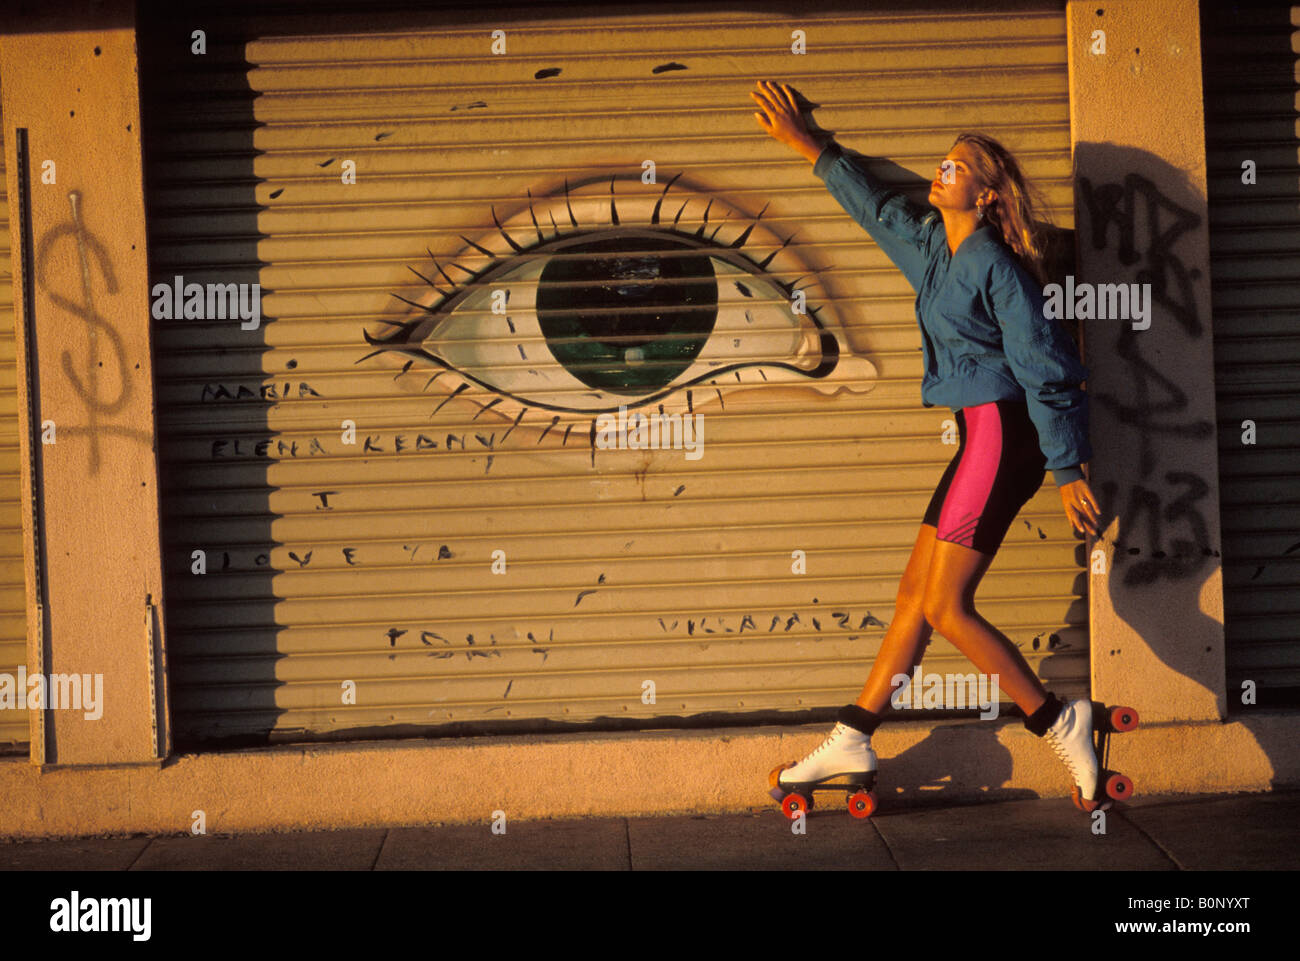 Une femme sur patins pose devant une peinture murale à Venice Beach California USA Banque D'Images